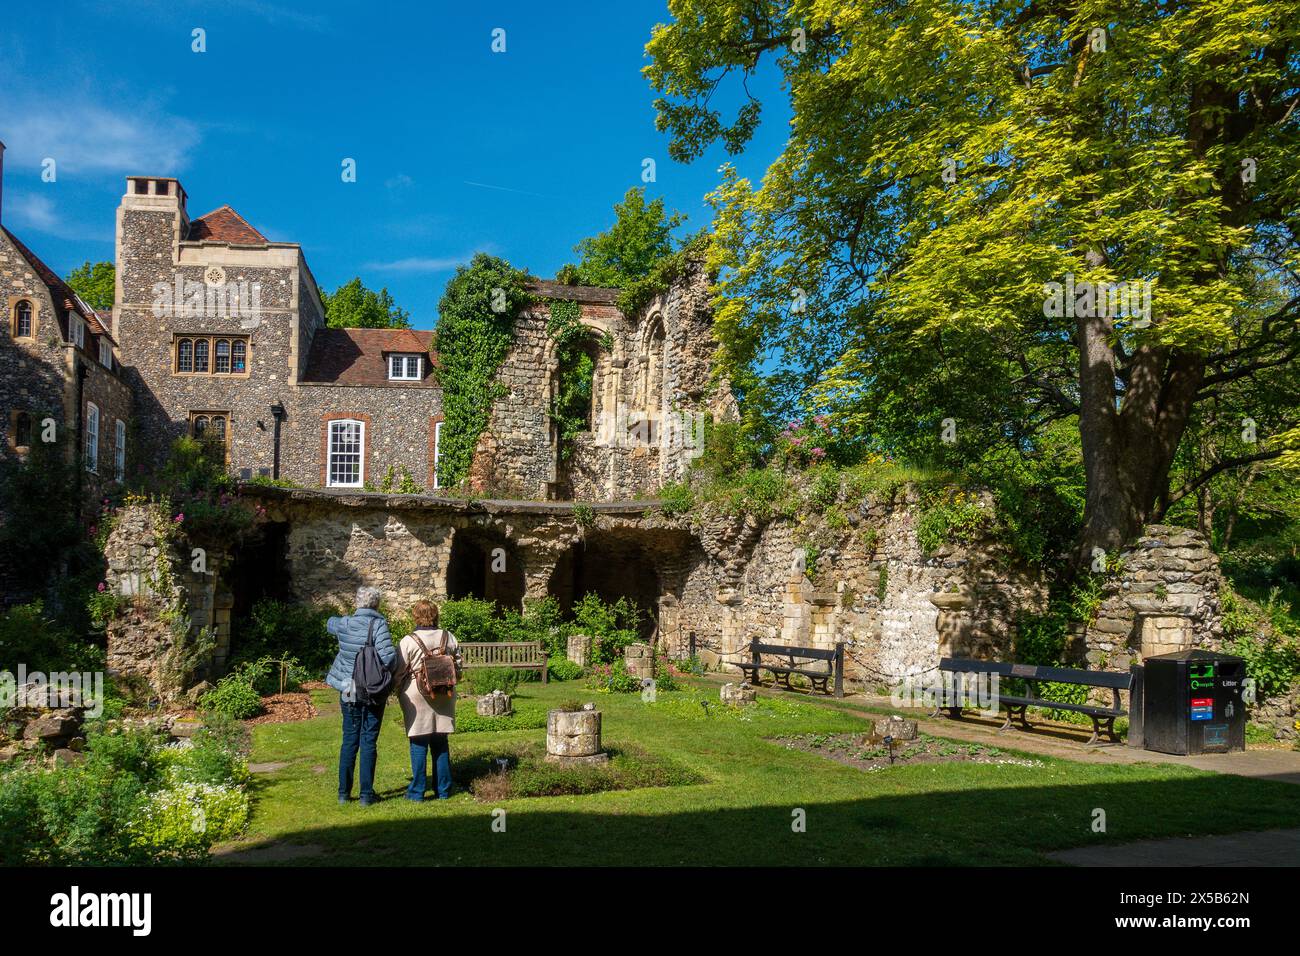 Le jardin d'herbes, Cathédrale de Canterbury, Canterbury, Kent, Angleterre Un jardin d'herbes médicinales du 16ème siècle a été recréé parmi les ruines du dortoir monastique. Banque D'Images